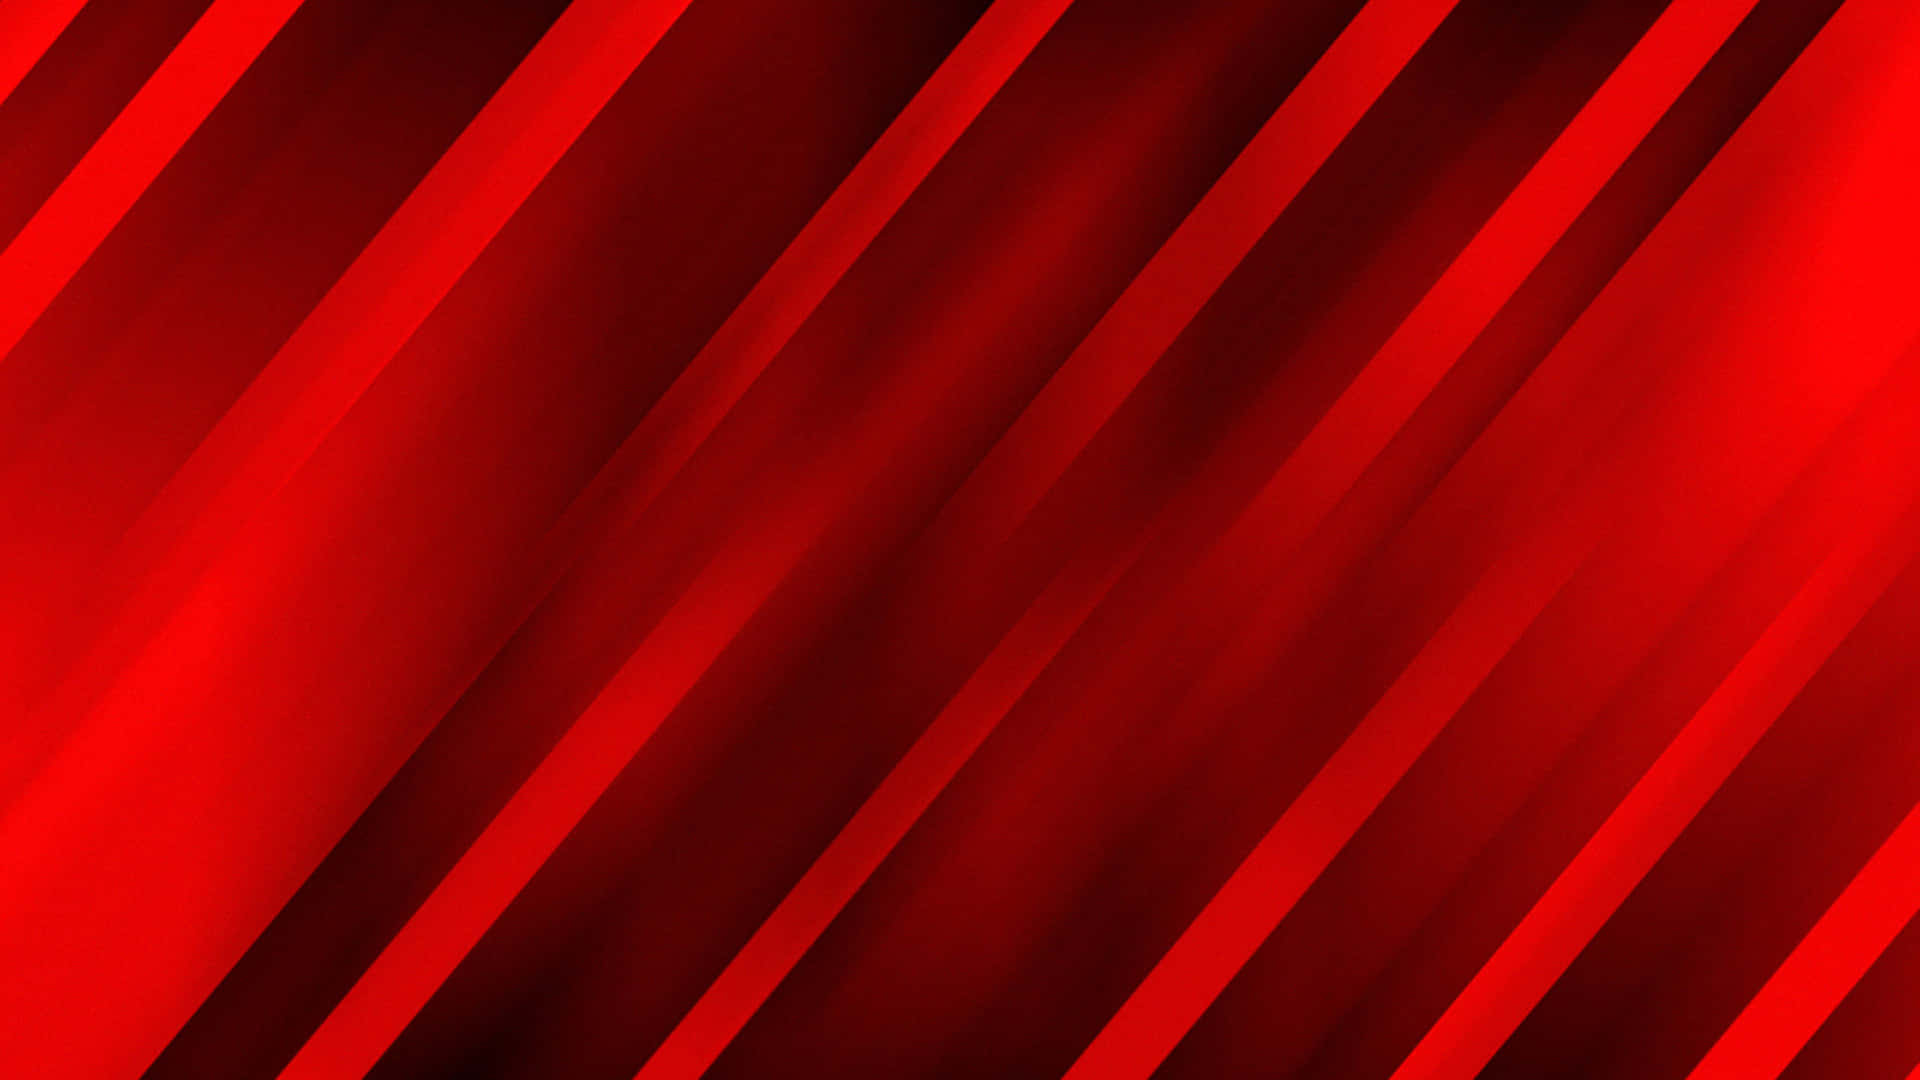 Rich Crimson Red High Resolution Background